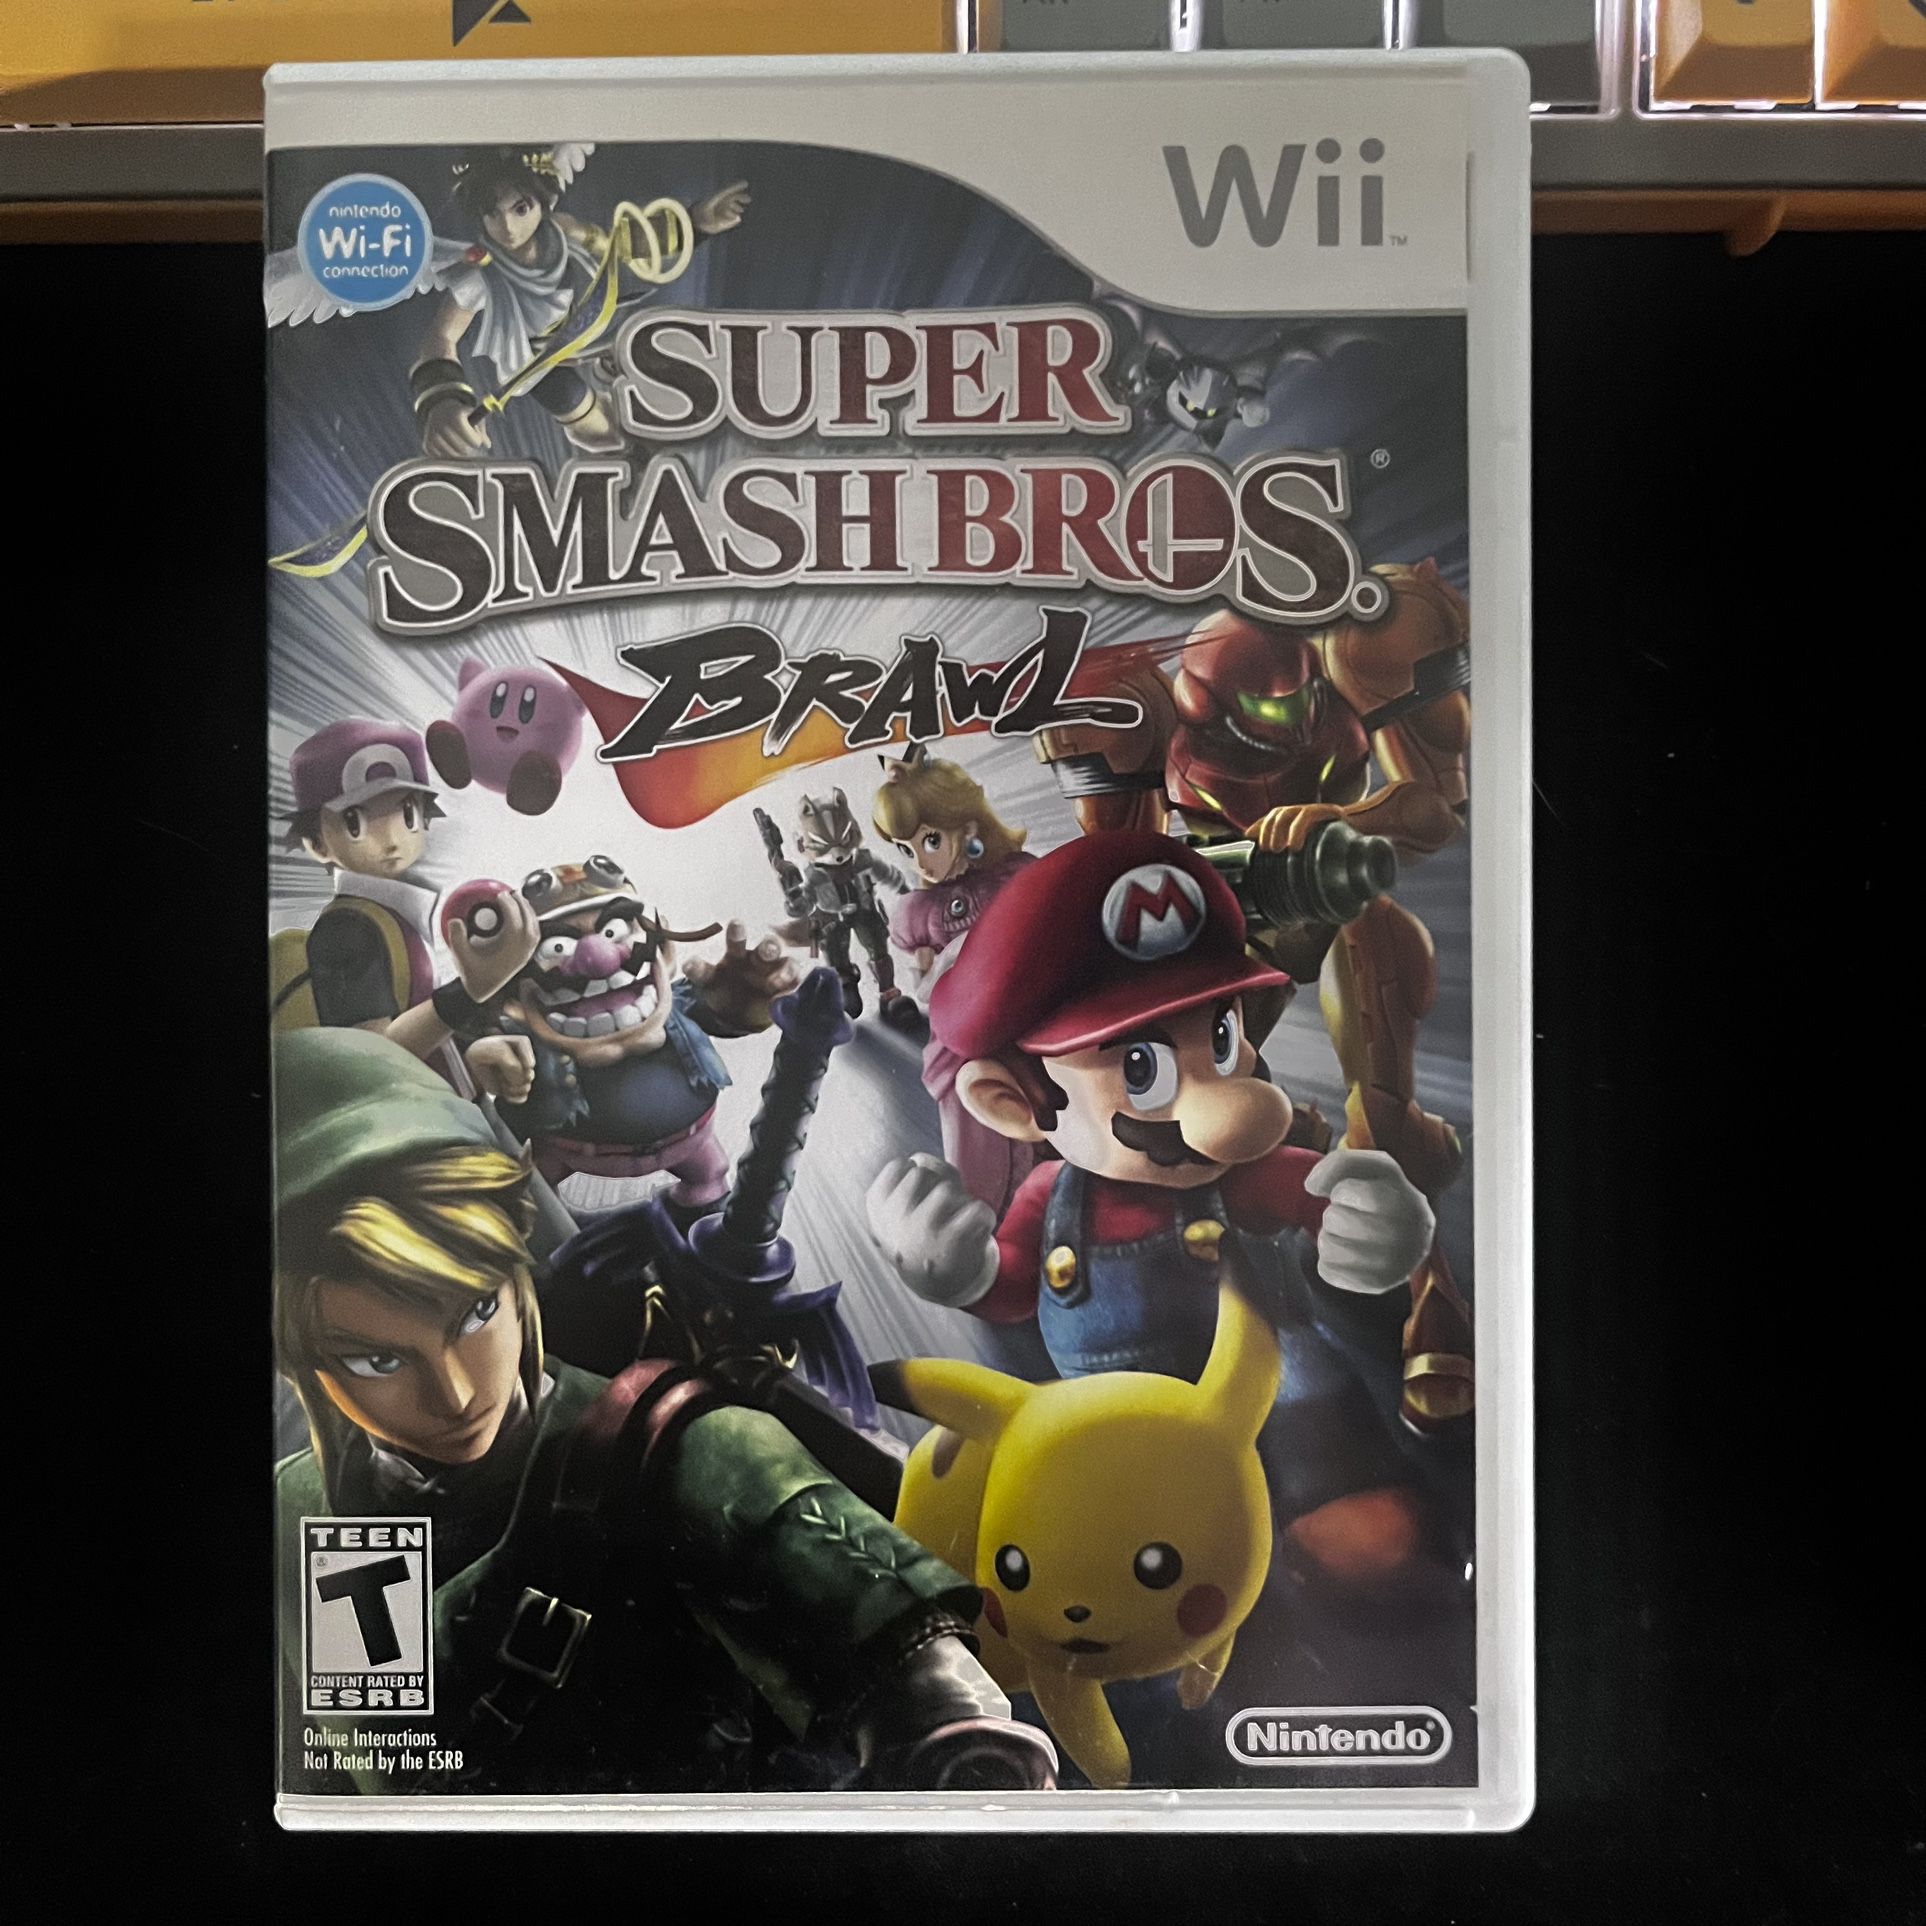 Super Smash Bros. Brawl for Nintendo Wii